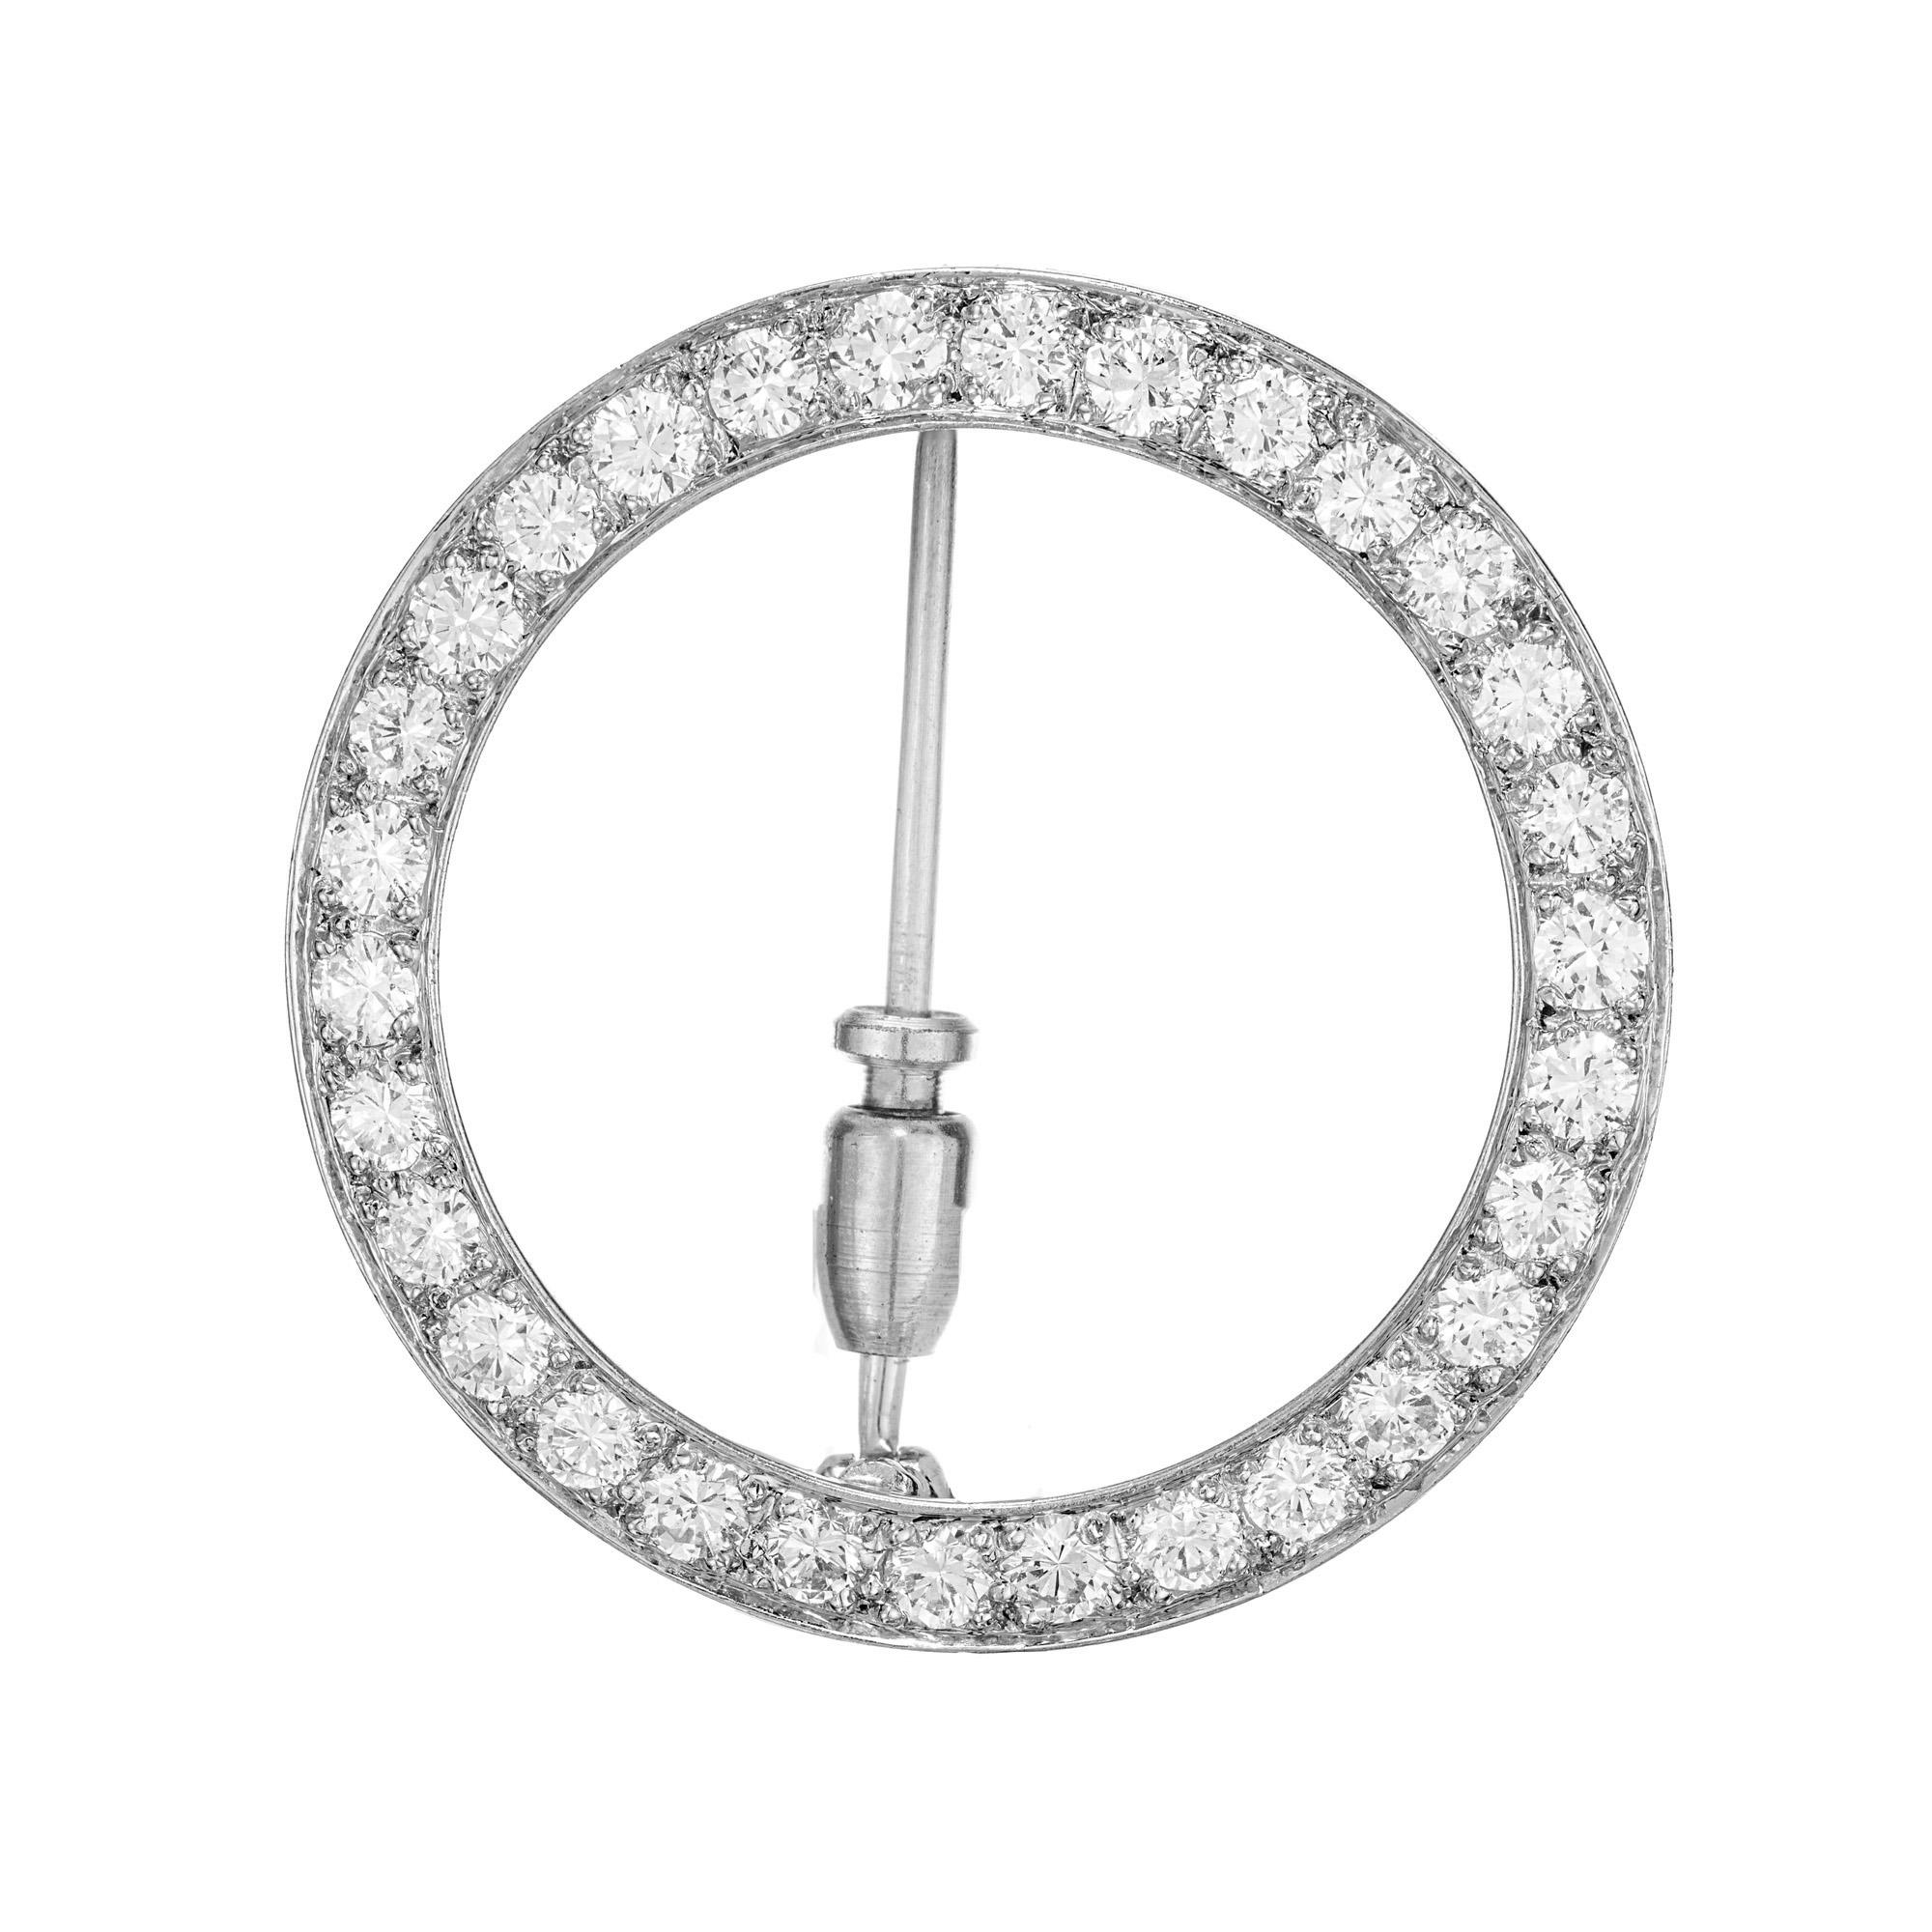 Vintage 1950's J.E. Broche en diamants Caldwell de Philadelphie. 30 diamants ronds de taille brillant dans une monture circulaire en platine. 

30 diamants ronds de taille brillant, G-H VS environ 1,20 ct.
Platine
Cachet : JEC
5,2 grammes
De haut en